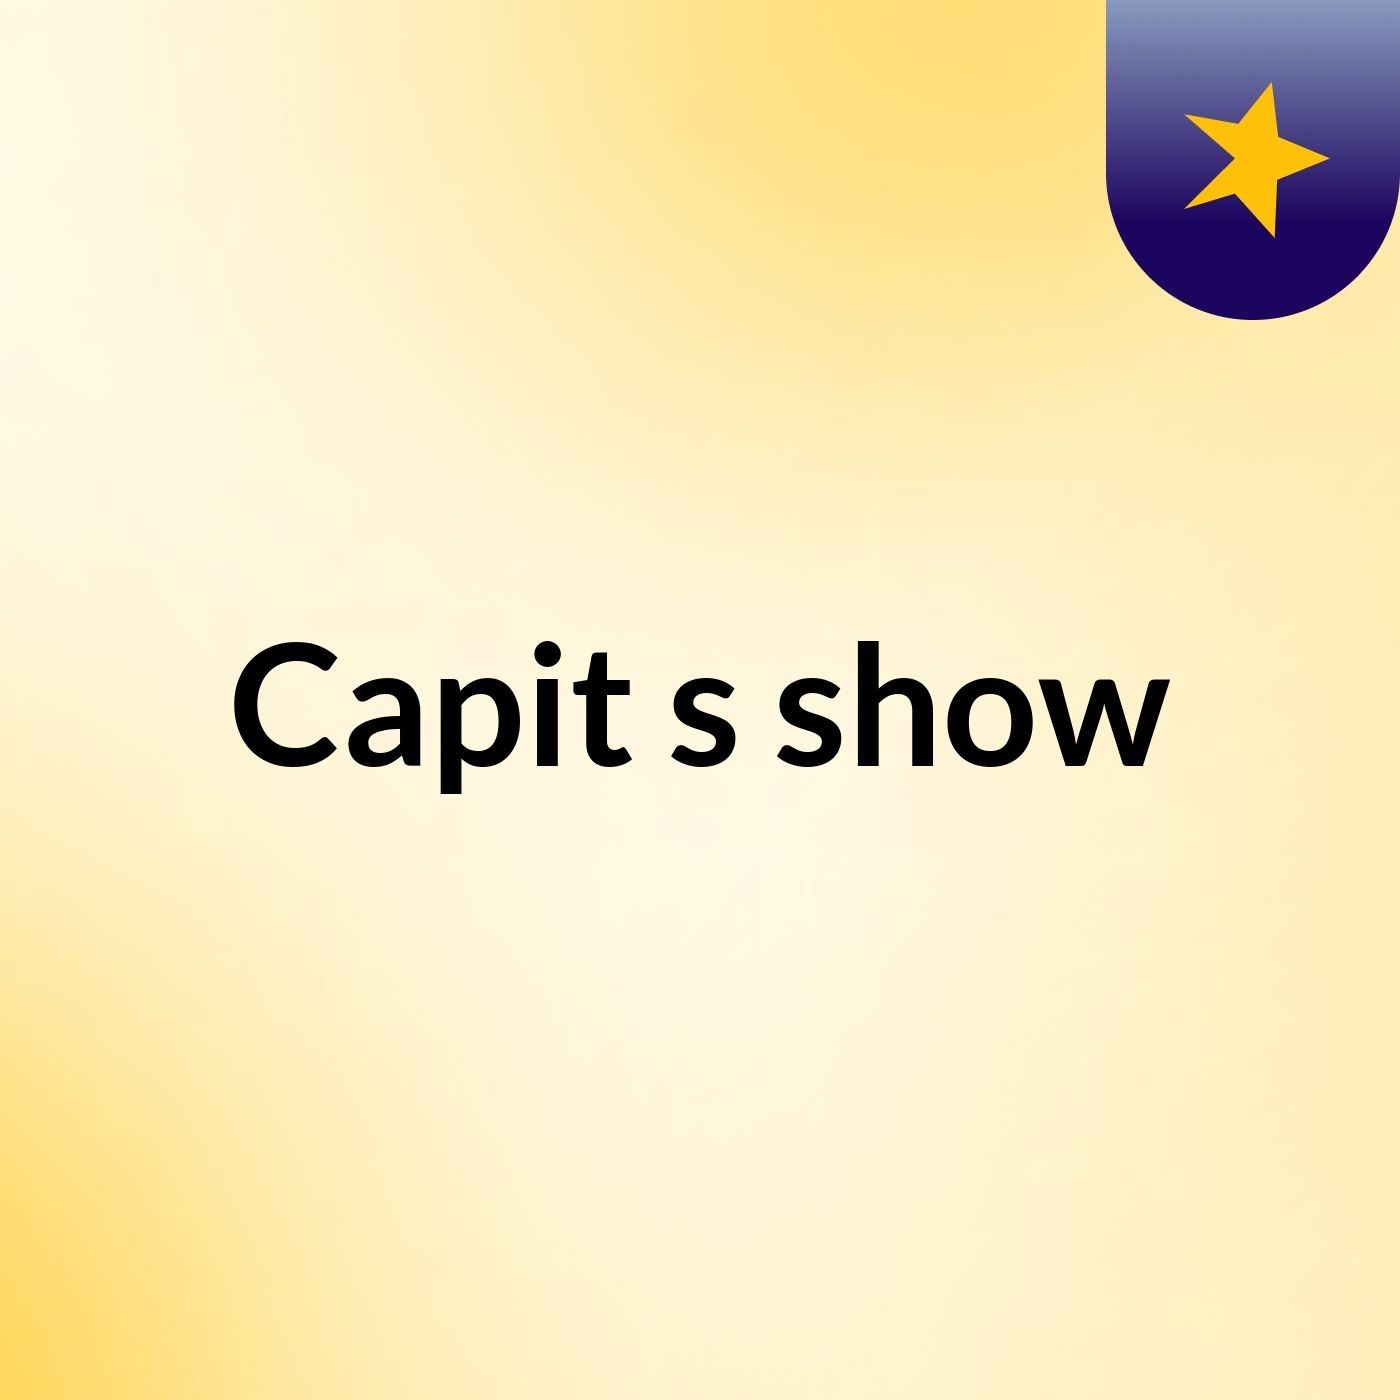 Capit's show